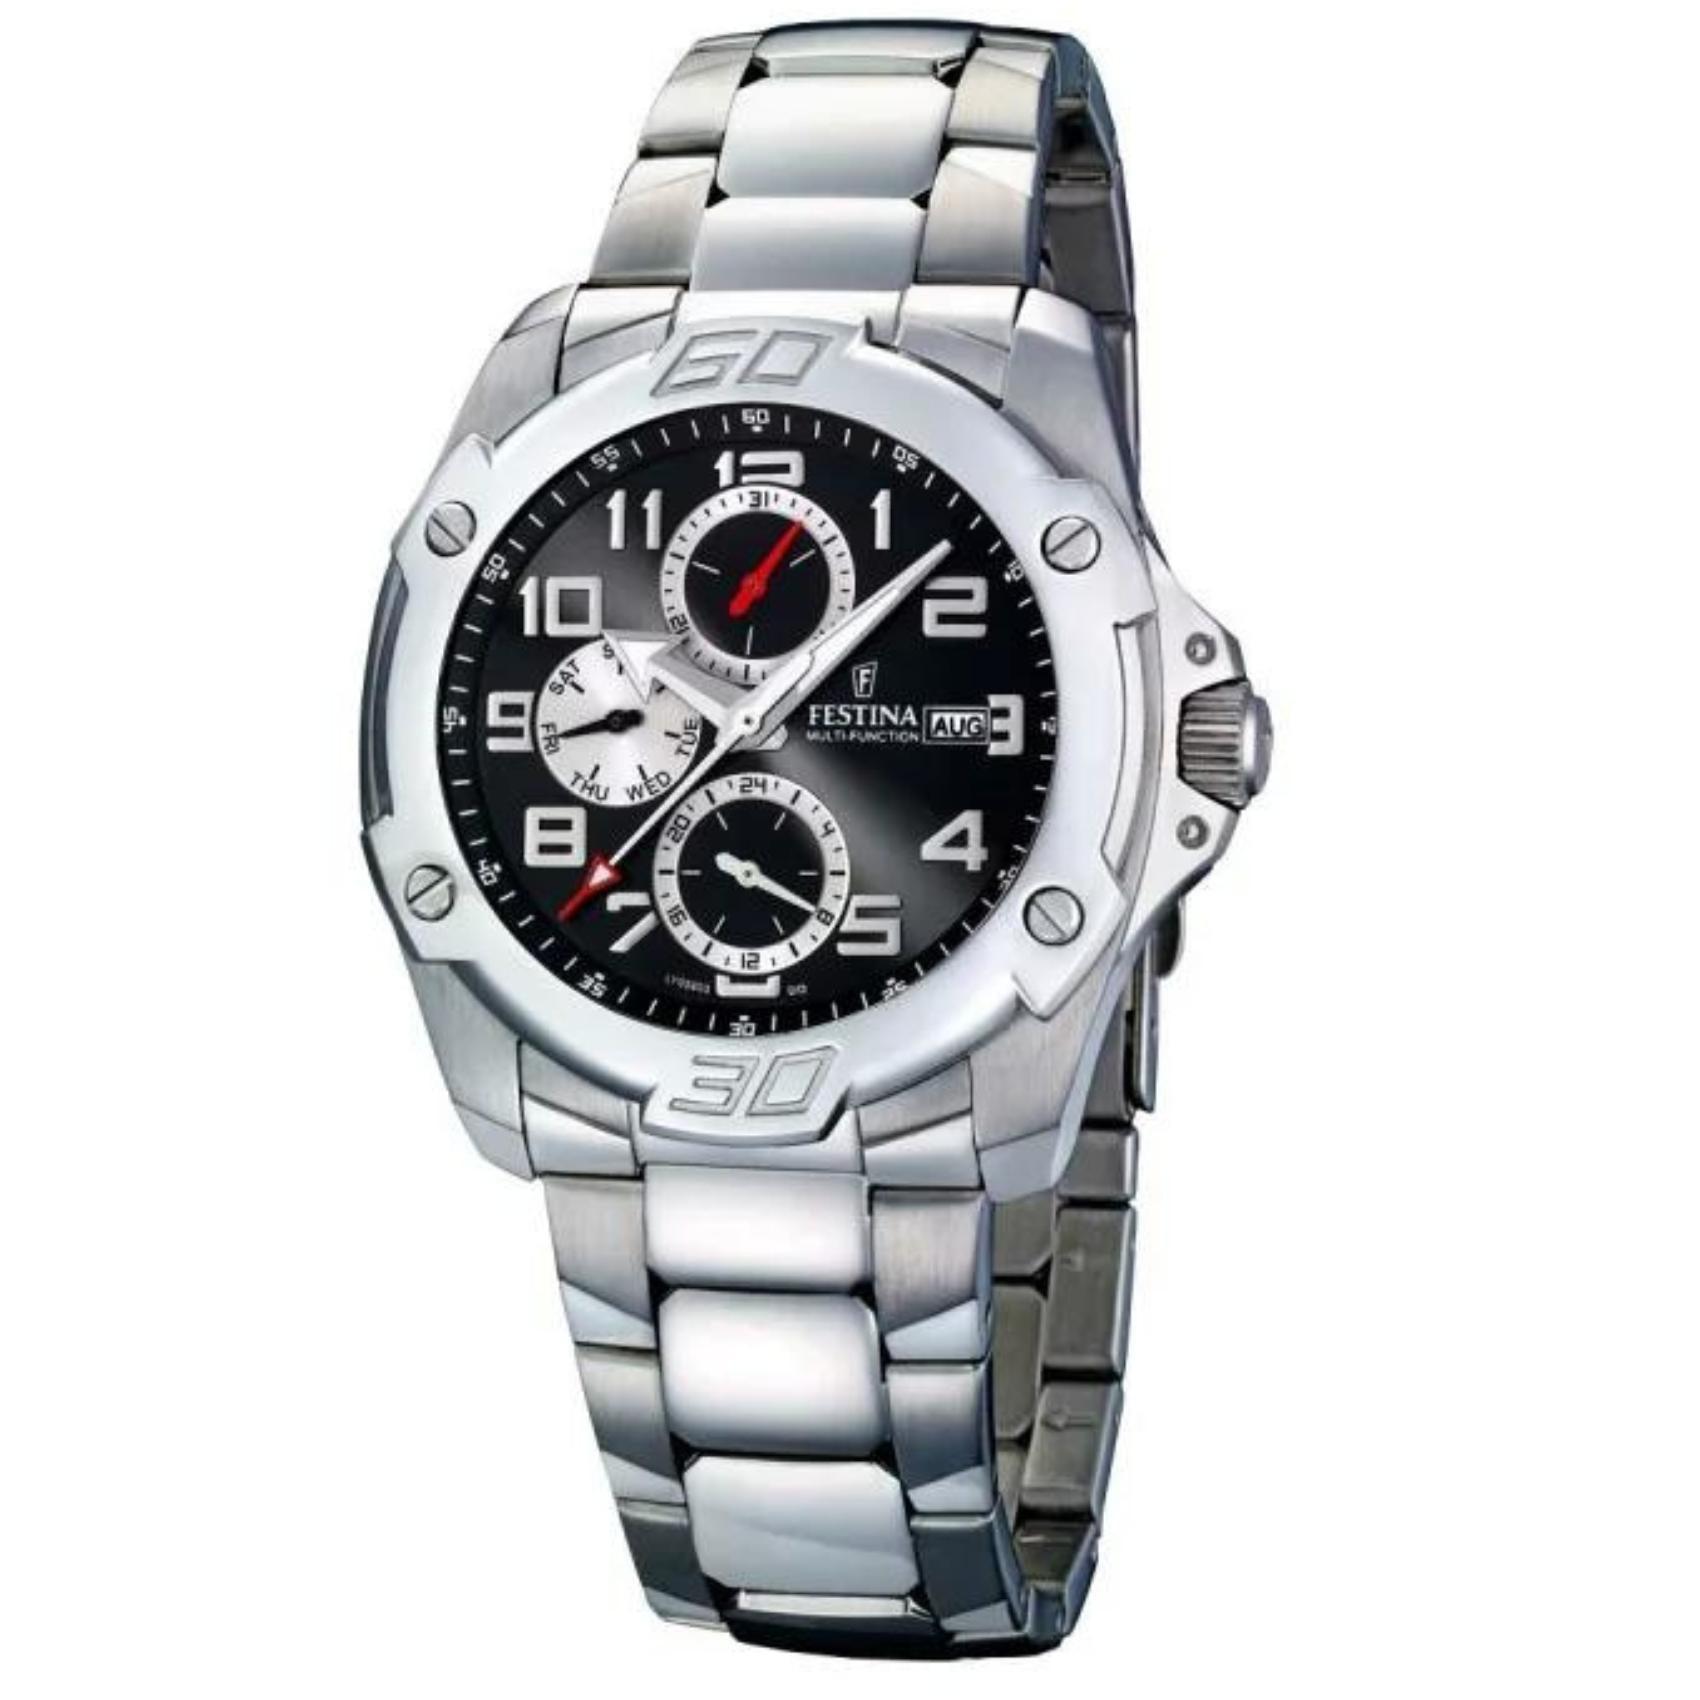 Αδιάβροχο ρολόι Festina F16385/3 με χρονογράφο, ασημί μπρασελέ, μαύρο καντράν με ένδειξη ημερομηνίας και στεφάνι διαμέτρου 43mm αδιάβροχο στις 10ATM-100M..